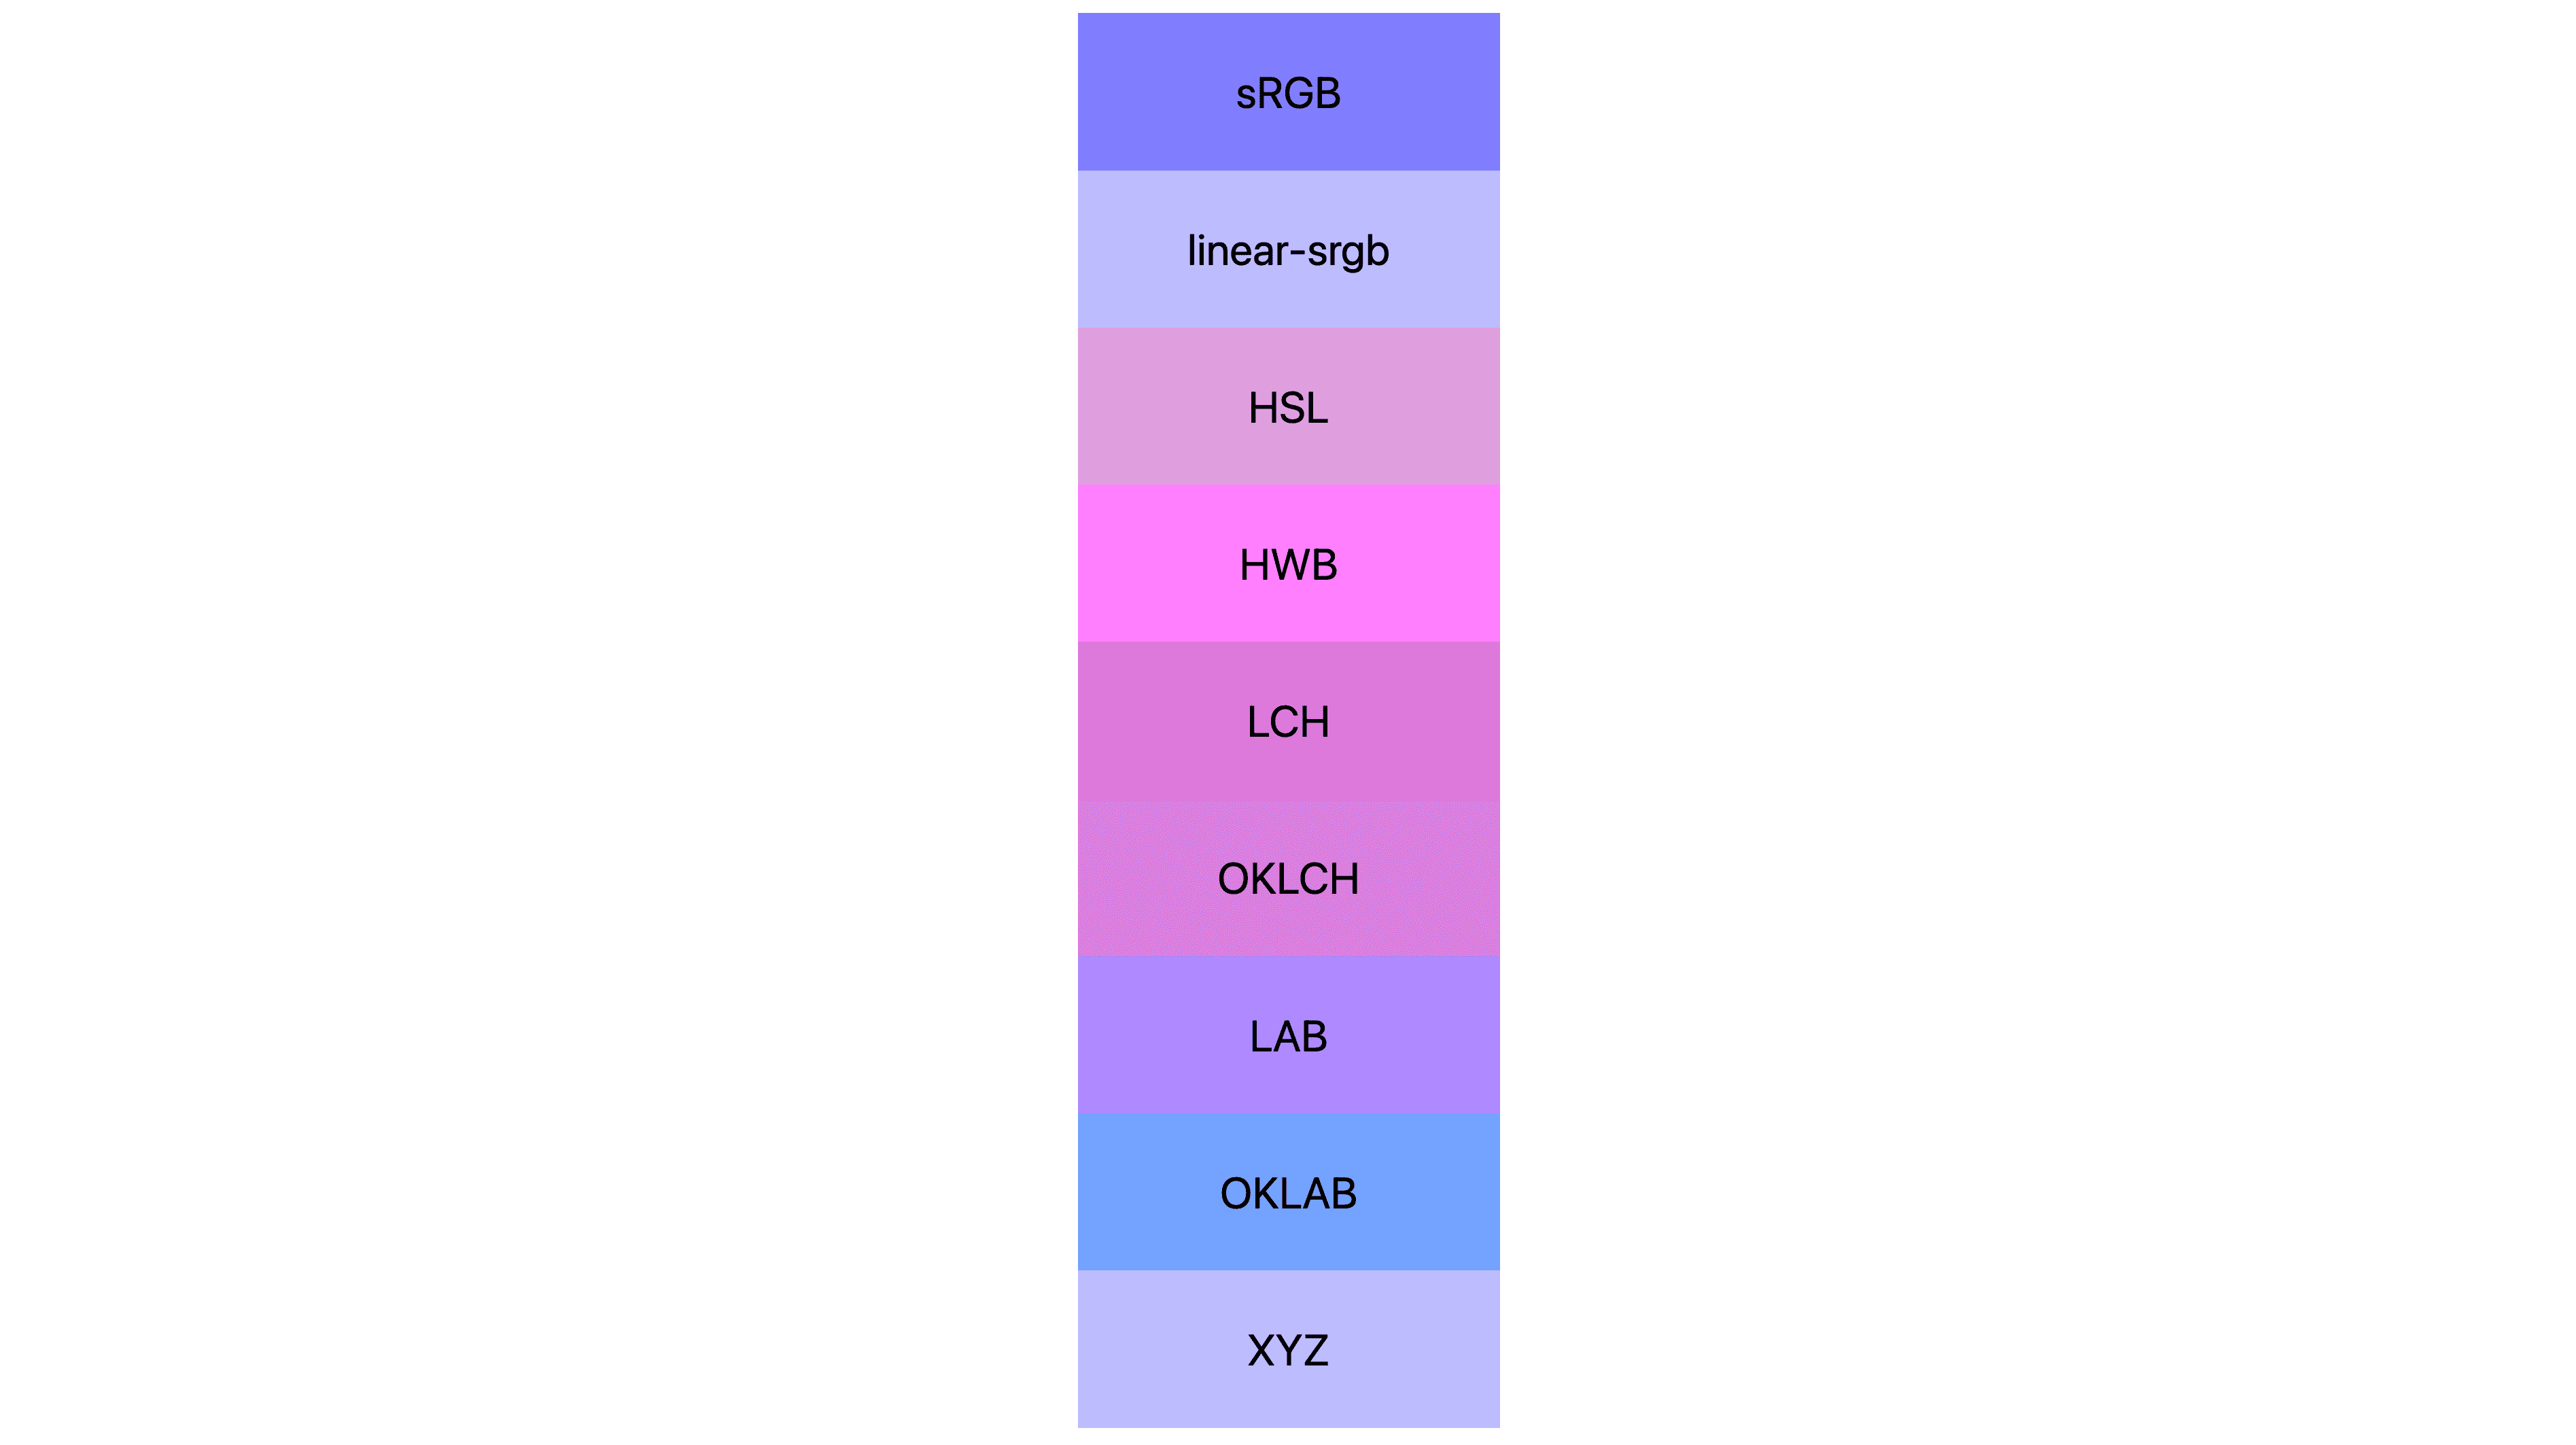 सात अलग-अलग रंग स्पेस (एसआरजीबी, लीनियर-एसआरजीबी, lch, oklch, lab, oklab, xyz) मौजूद हैं. इनमें से हर एक को अलग-अलग नतीजे मिले हैं. कई गुलाबी या बैंगनी रंग के होते हैं, लेकिन कुछ असल में नीले रंग के होते हैं.